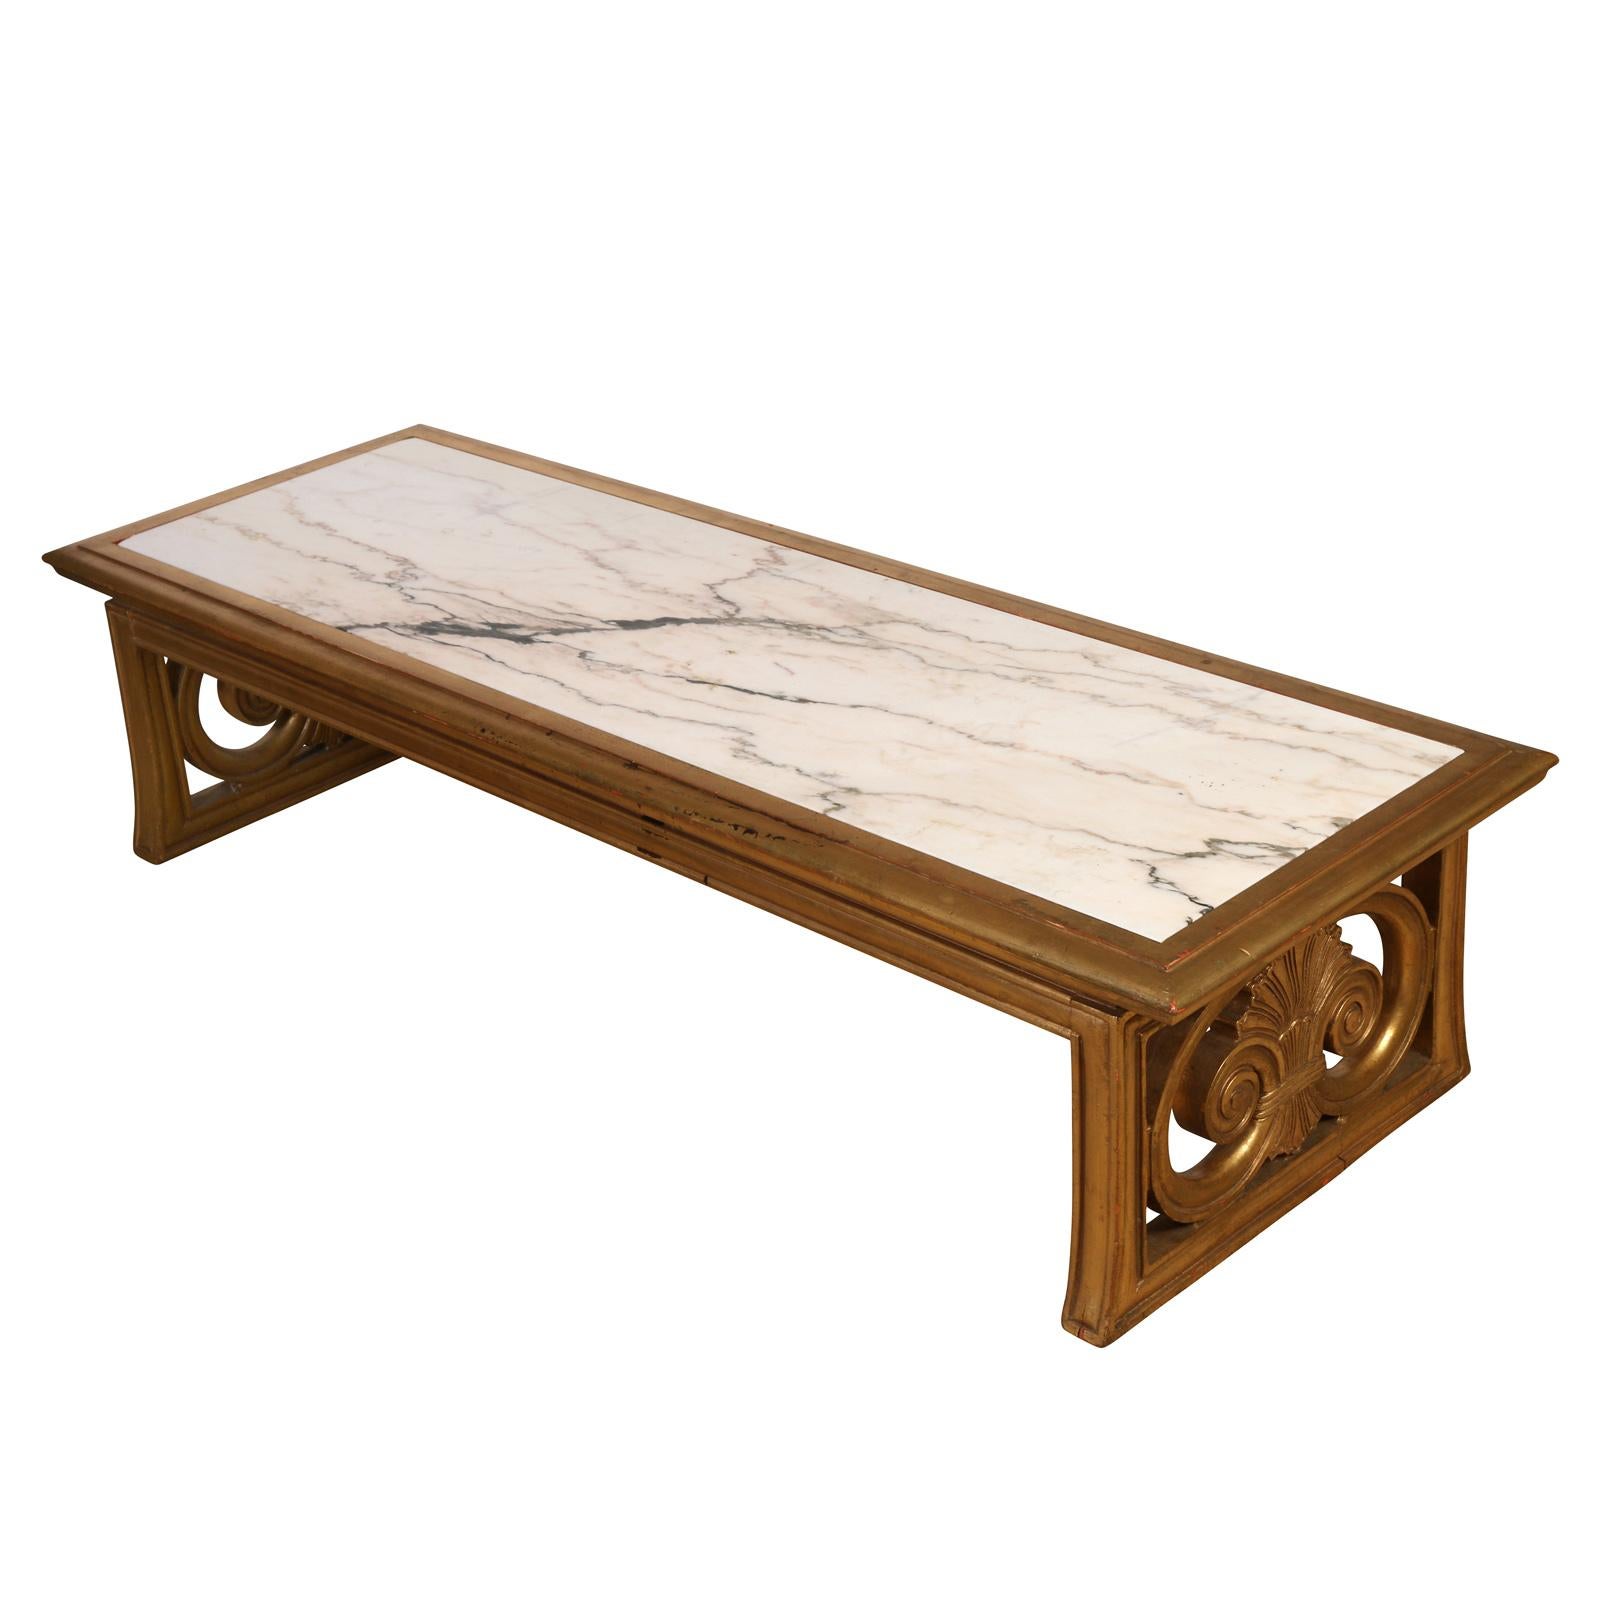 Vieille table basse rectangulaire en bois doré avec plateau en marbre blanc. La base en bois doré comprend des détails de volutes sculptées sur chaque petit côté de la table.